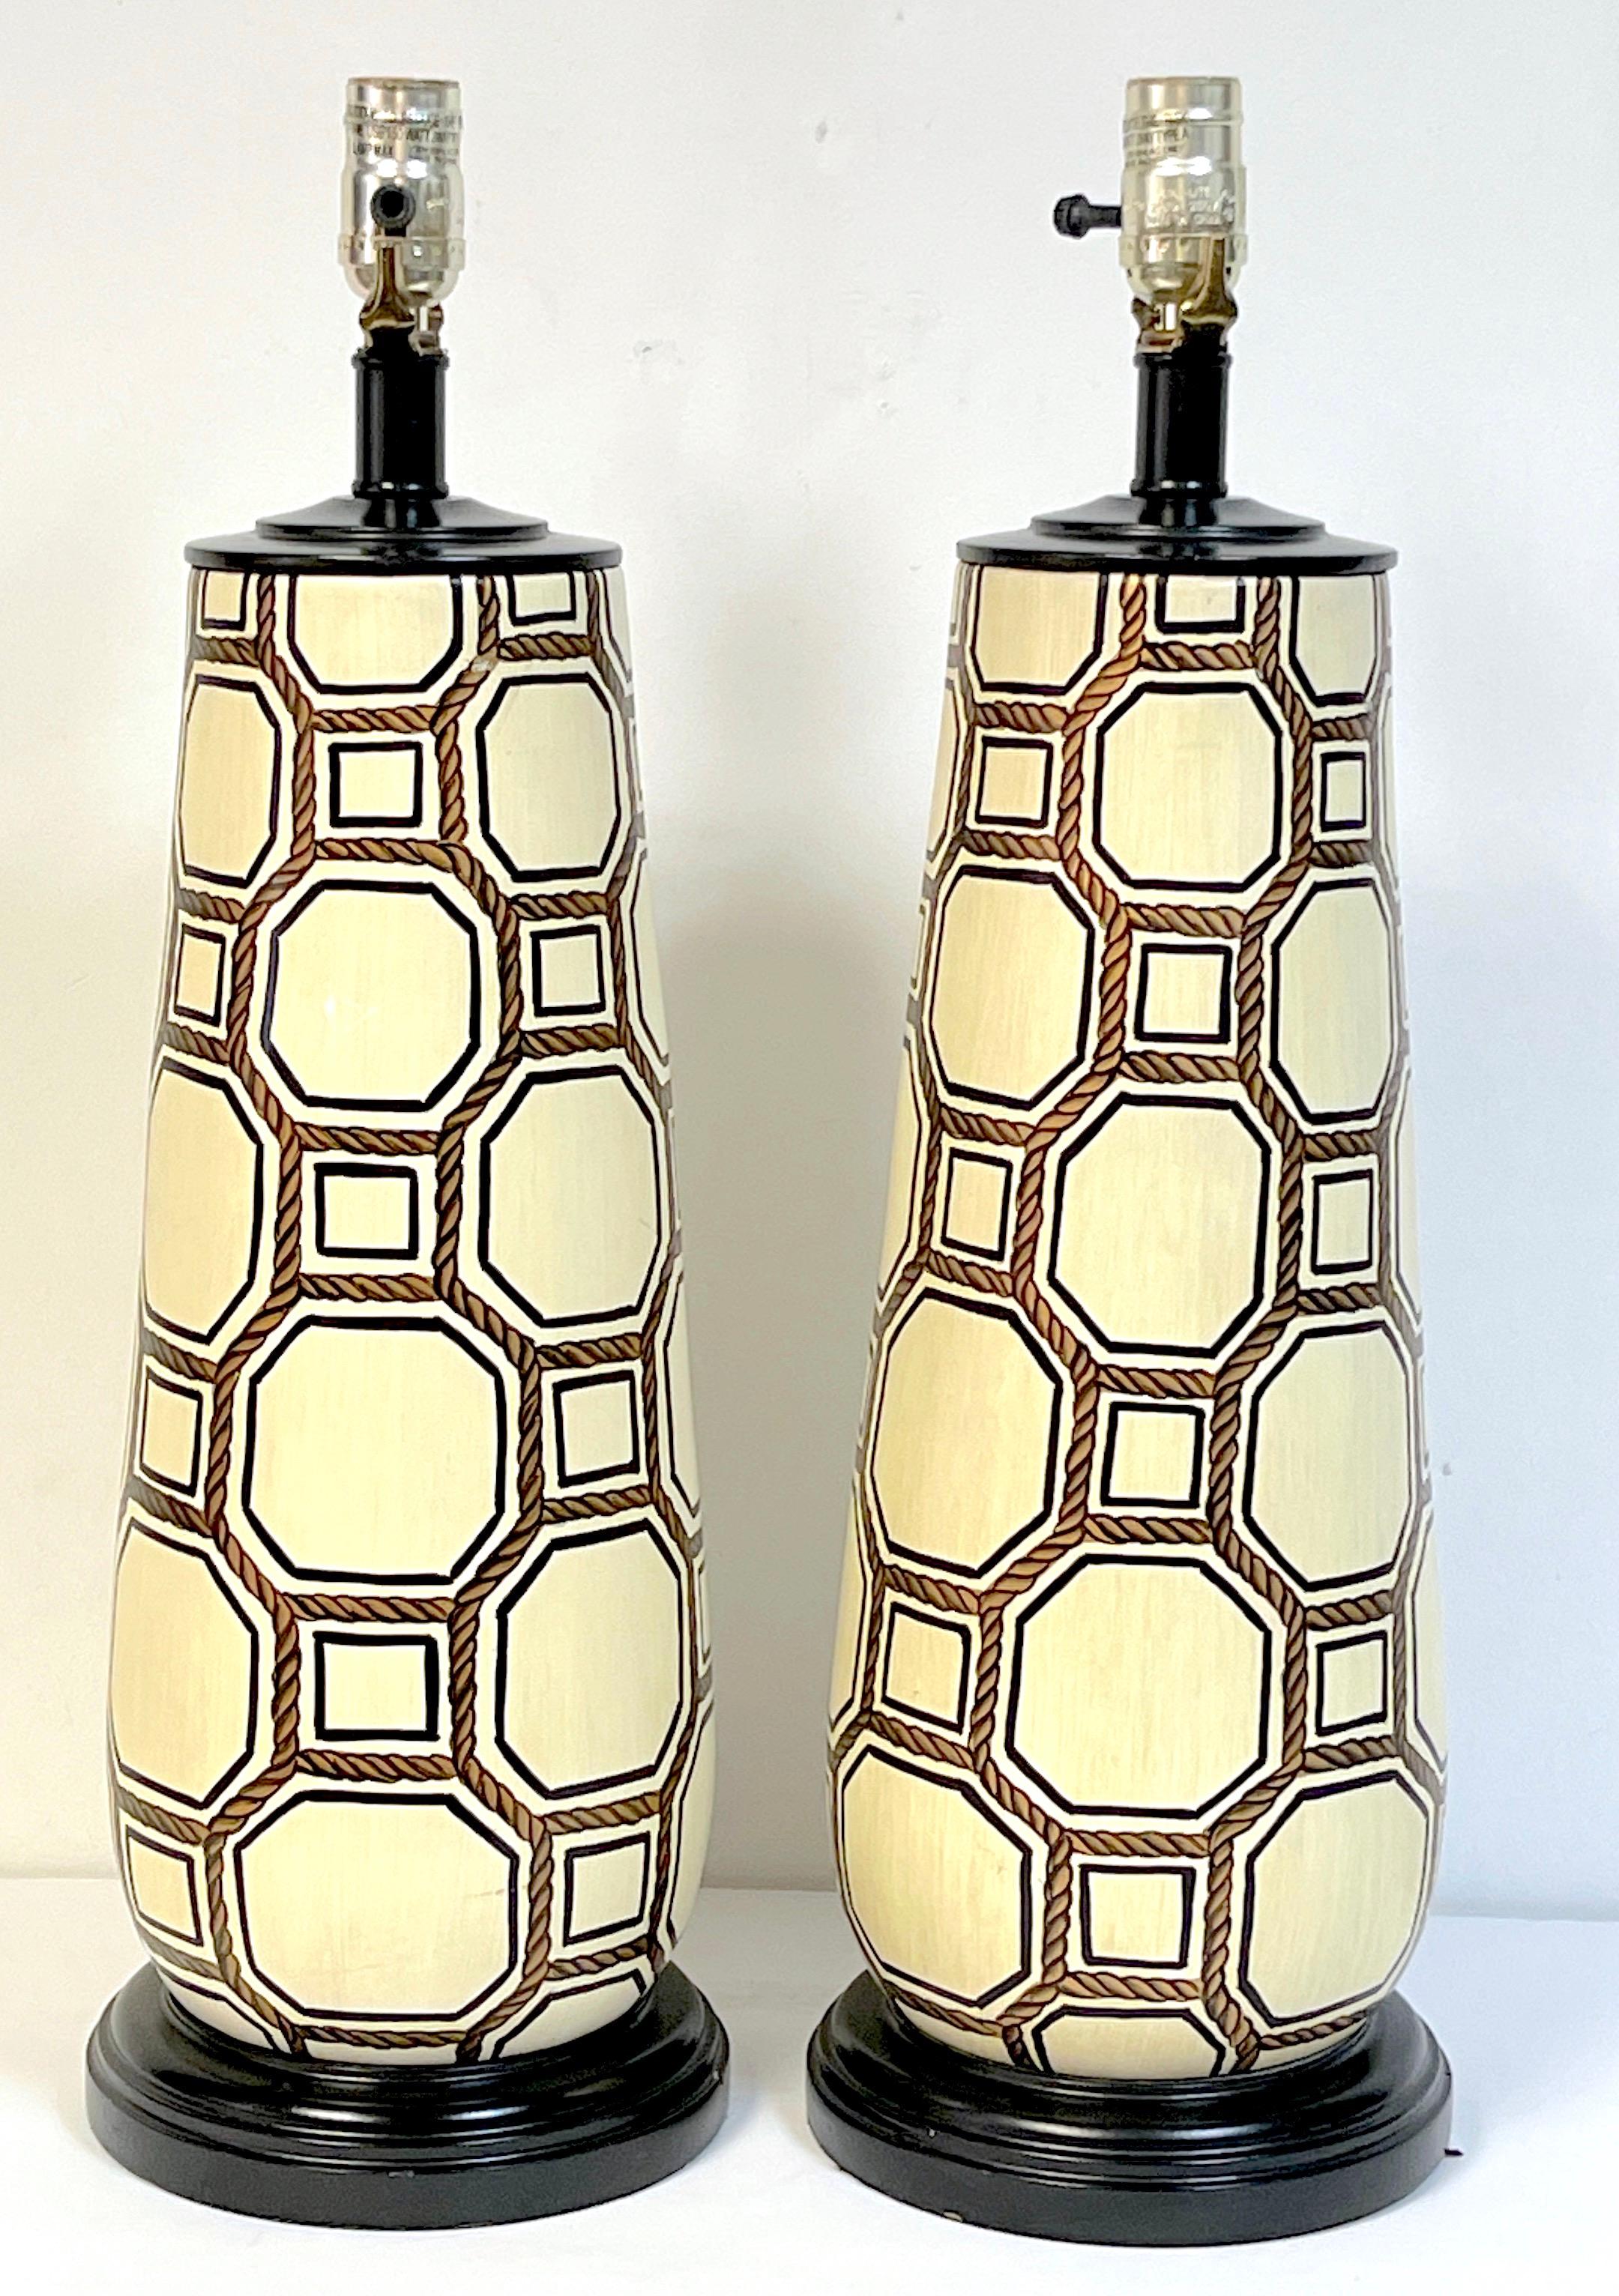 Paire de lampes à vignettes géométriques en poterie italienne, de la marque Gio Ponti  
Italie, vers les années 1960
Une haute paire de lampes en poterie italienne du milieu du siècle, élégante et subtile, influencée par les designs de Gio Ponti.